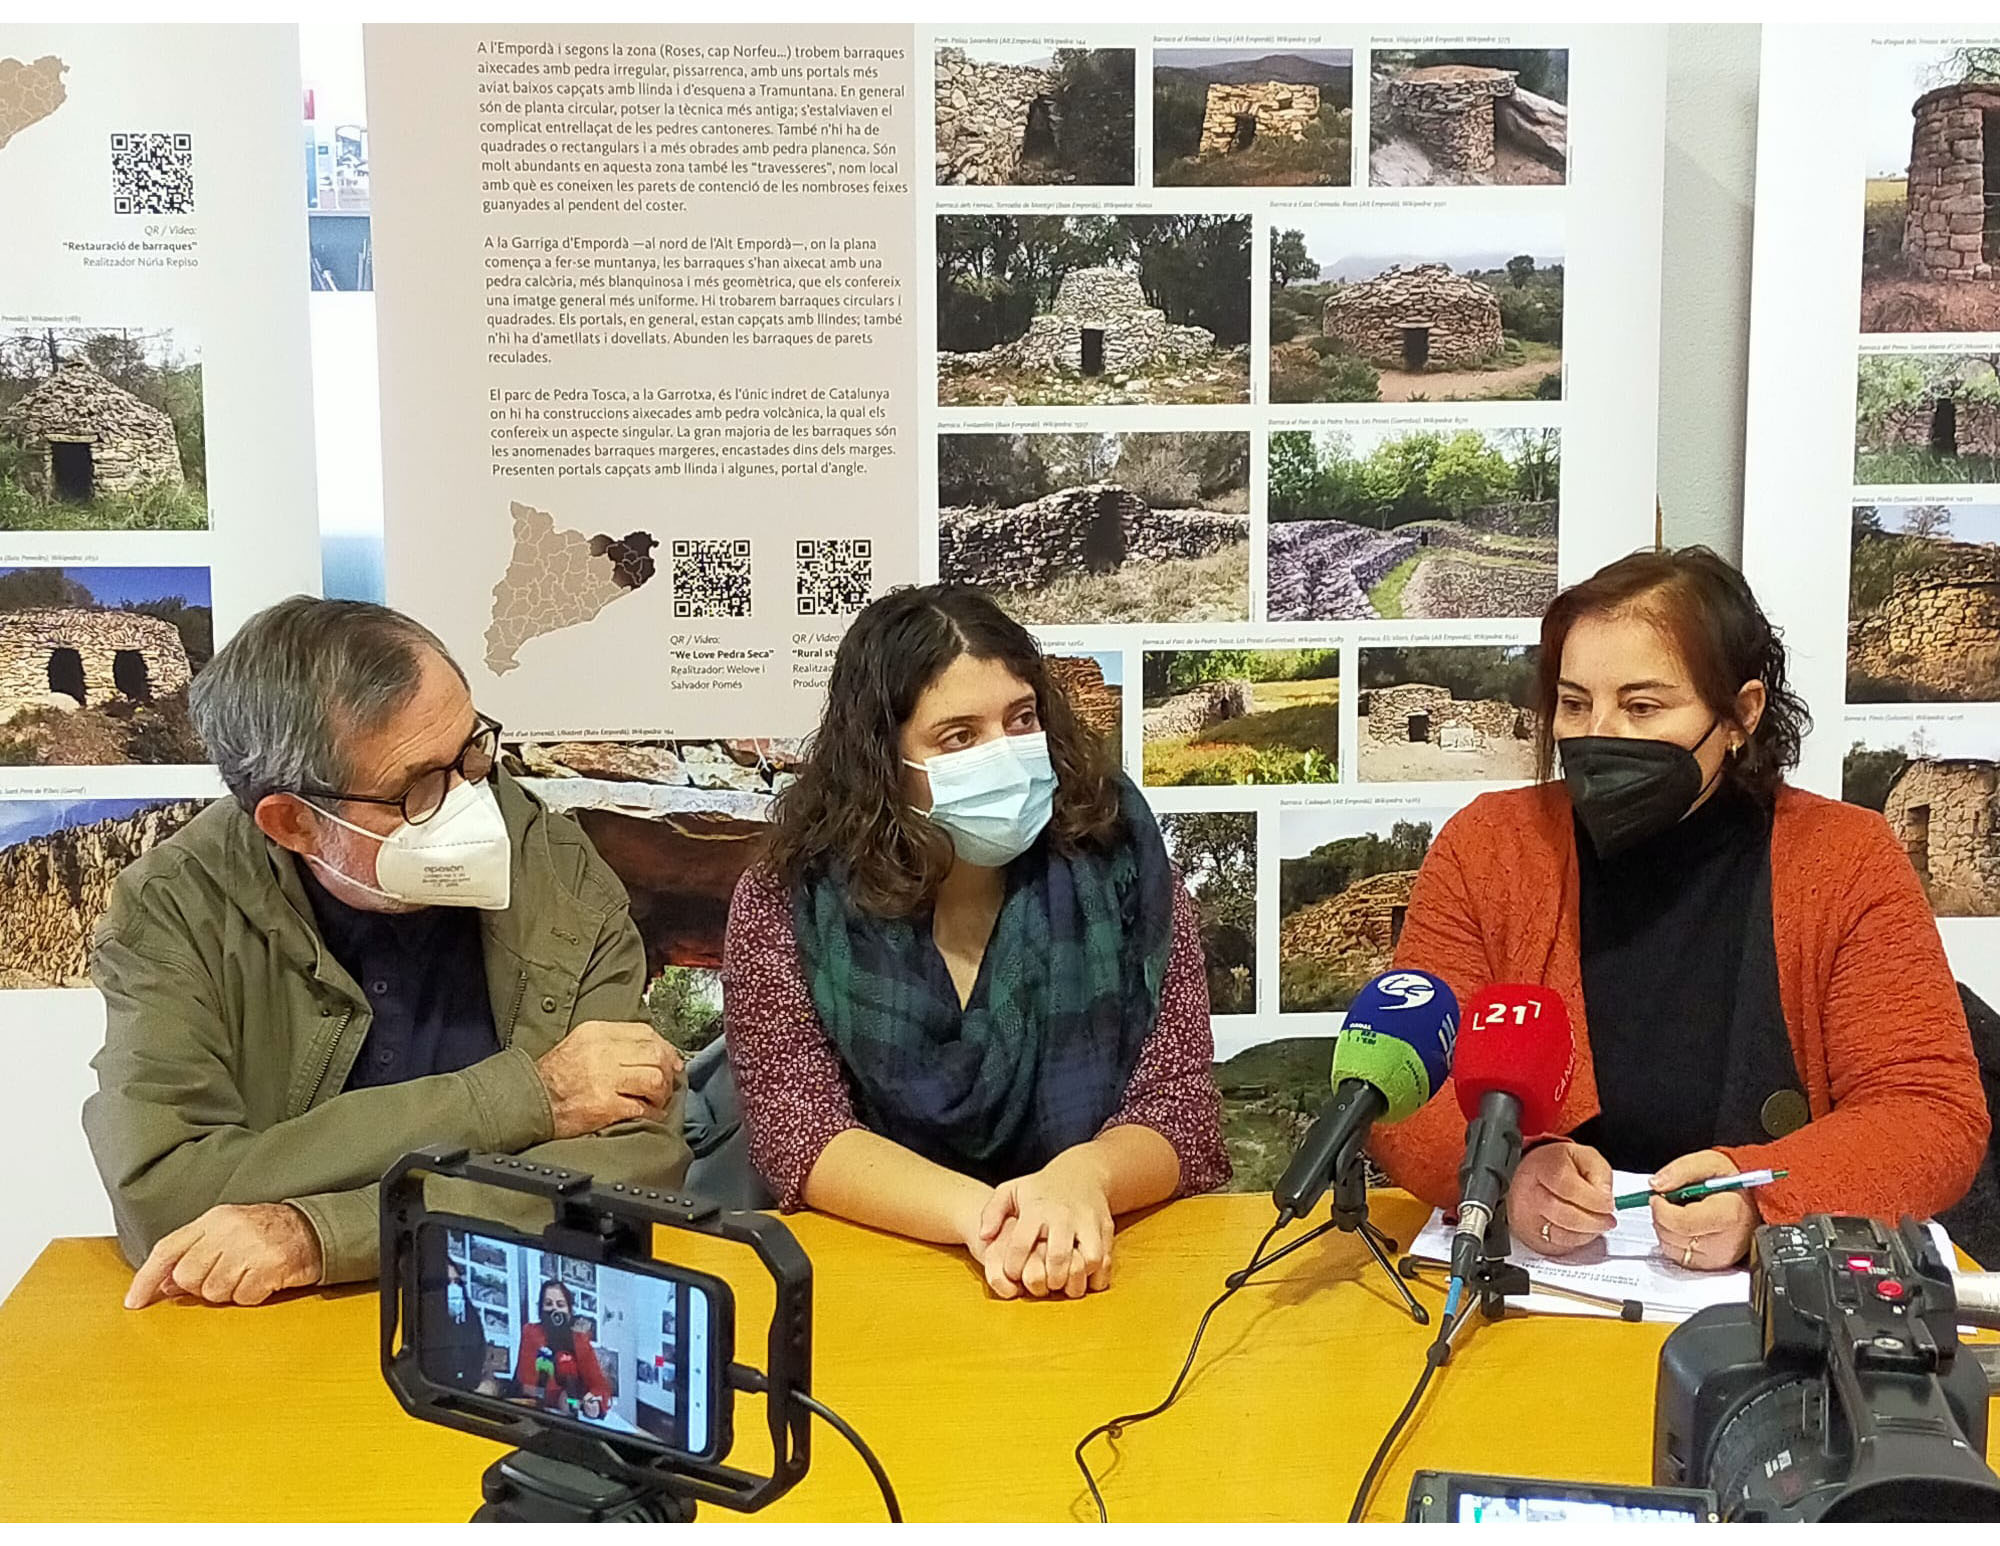 NdP - L'APSAT i l'IRMU presenten l'XI Trobada de Pedra Seca i Arquitectura Tradicional als territoris de parla catalana